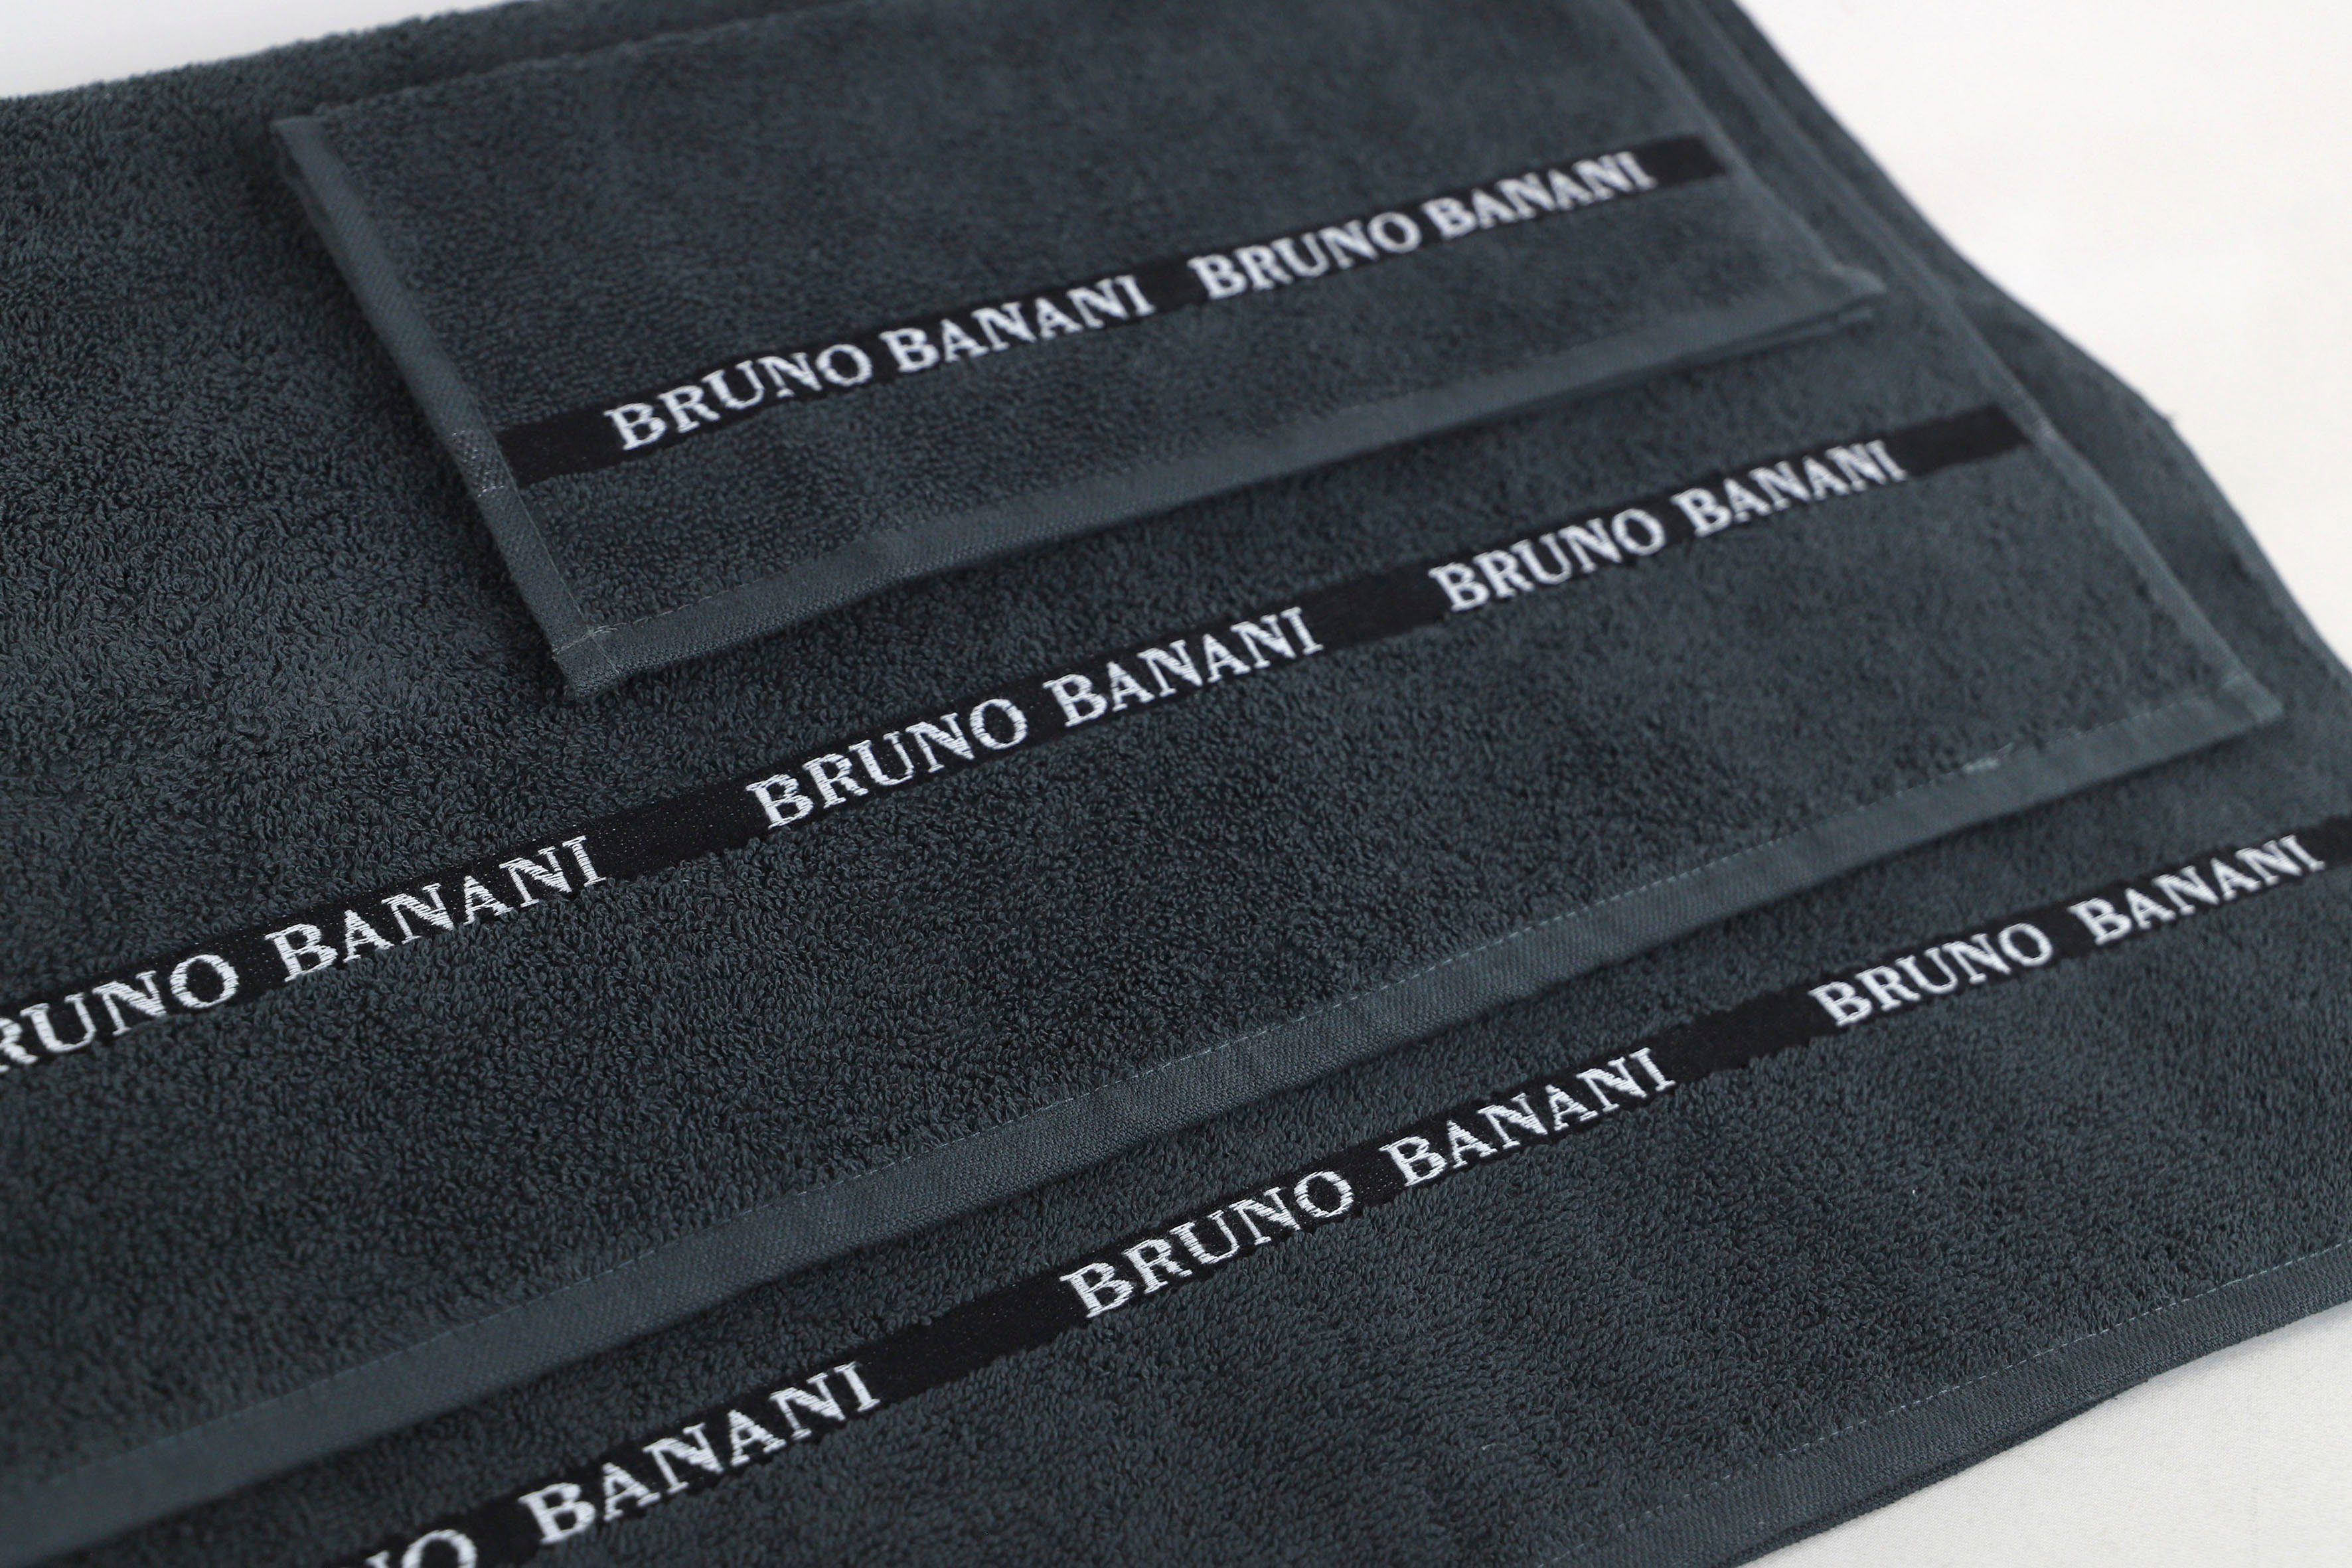 Baumwolle Banani Handtuch-Set Bruno 100% Walkfrottier, 6-tlg), einfarbiges Danny, mit (Set, anthracite aus Handtuch Set Logostreifen,